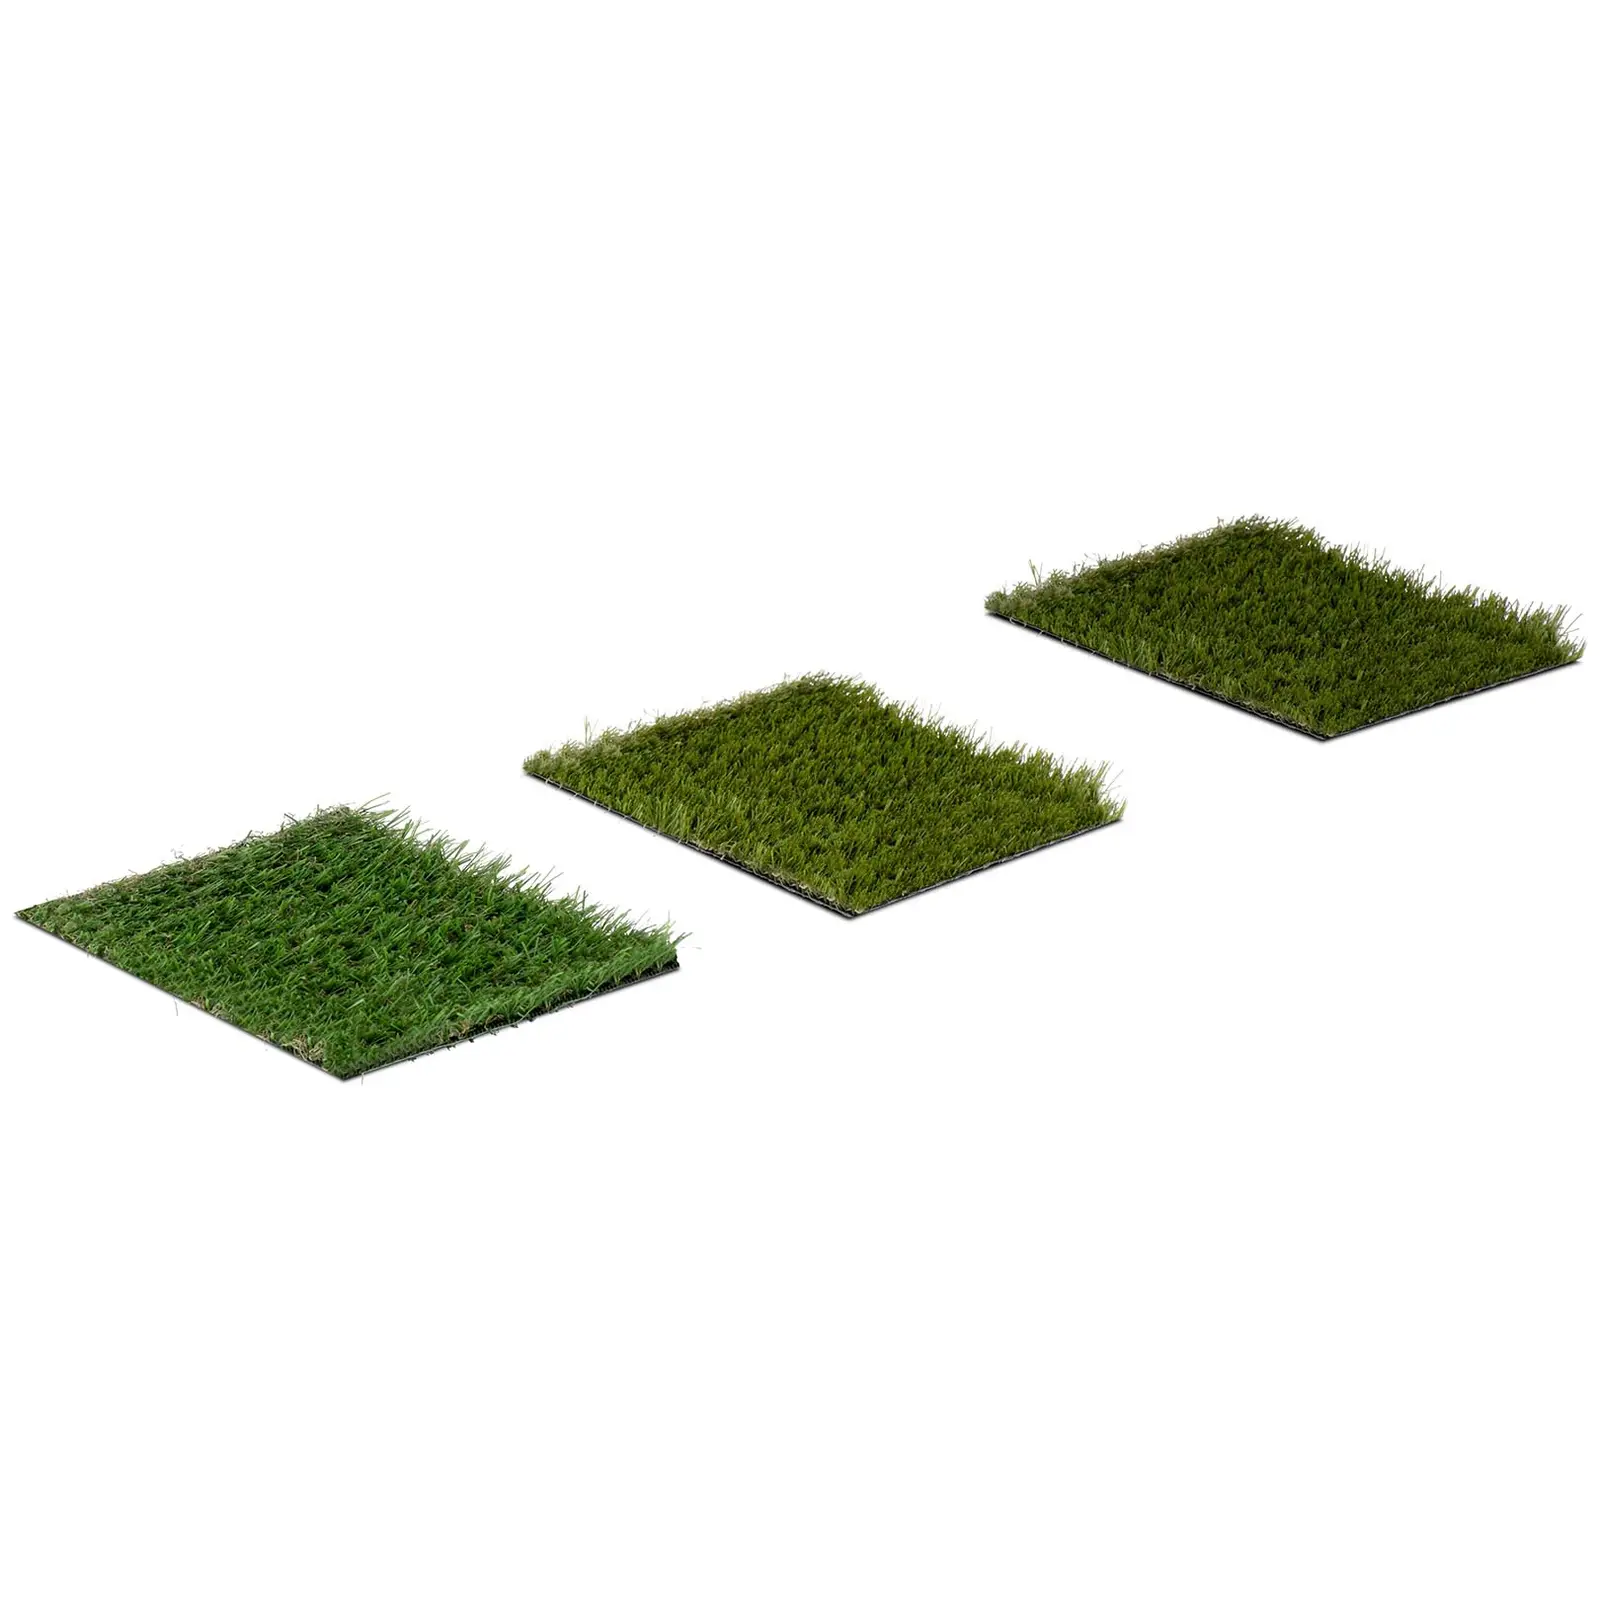 Sztuczna trawa - 3 próbki - każda po {{dimensions_1097}} cm - wysokość: 20 - 30 mm - szybkość ściegu: 20/10 13/10 14/10 cm - odporność na promieniowanie UV